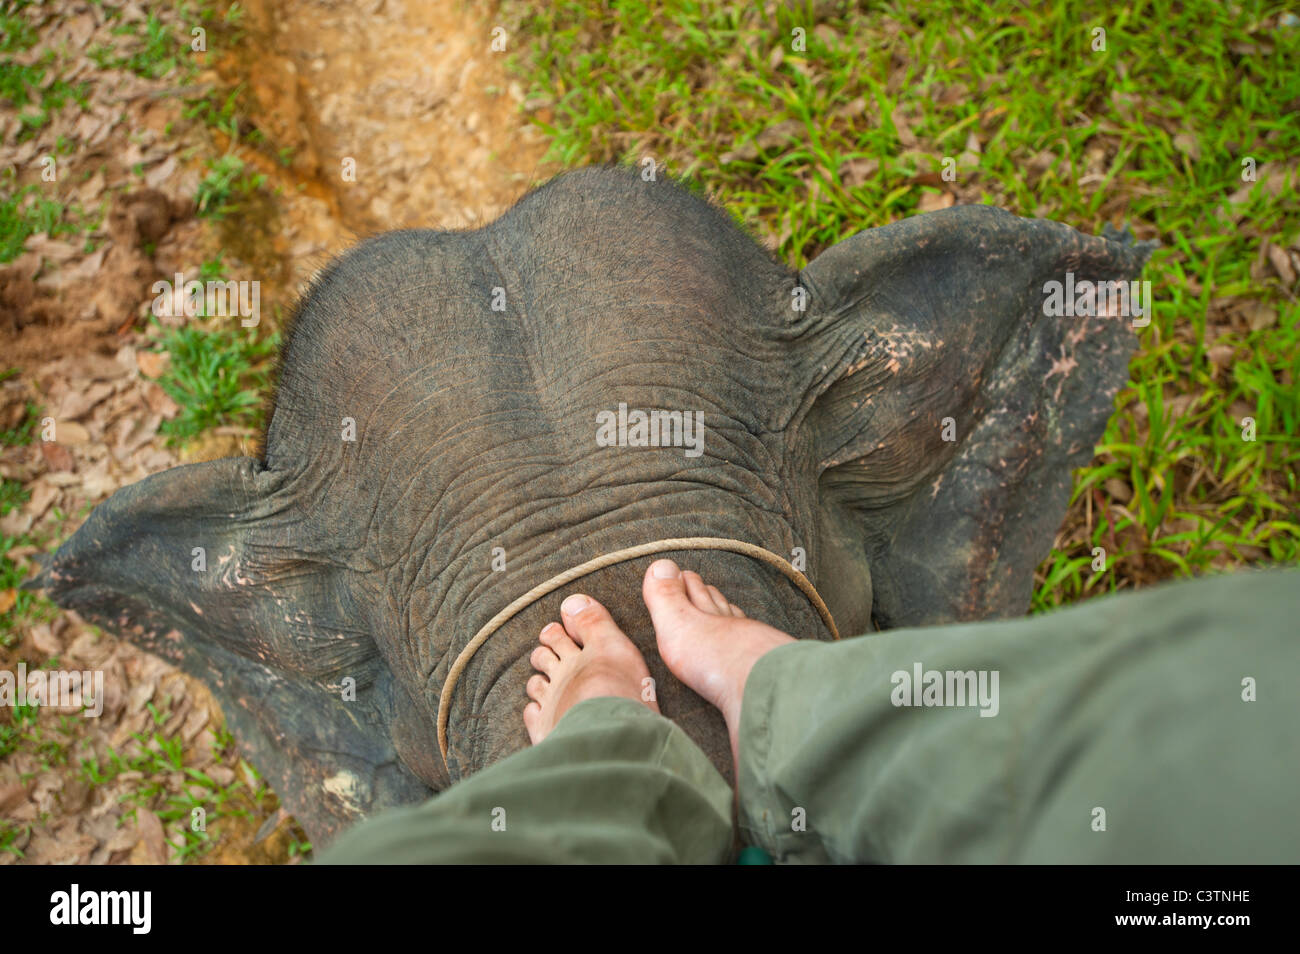 In groppa ad un elefante su un elefanti torna proprio forzerà ride spostare la guida di sterzo regola governare sterzo guida mahout elefant gamba gambe Foto Stock